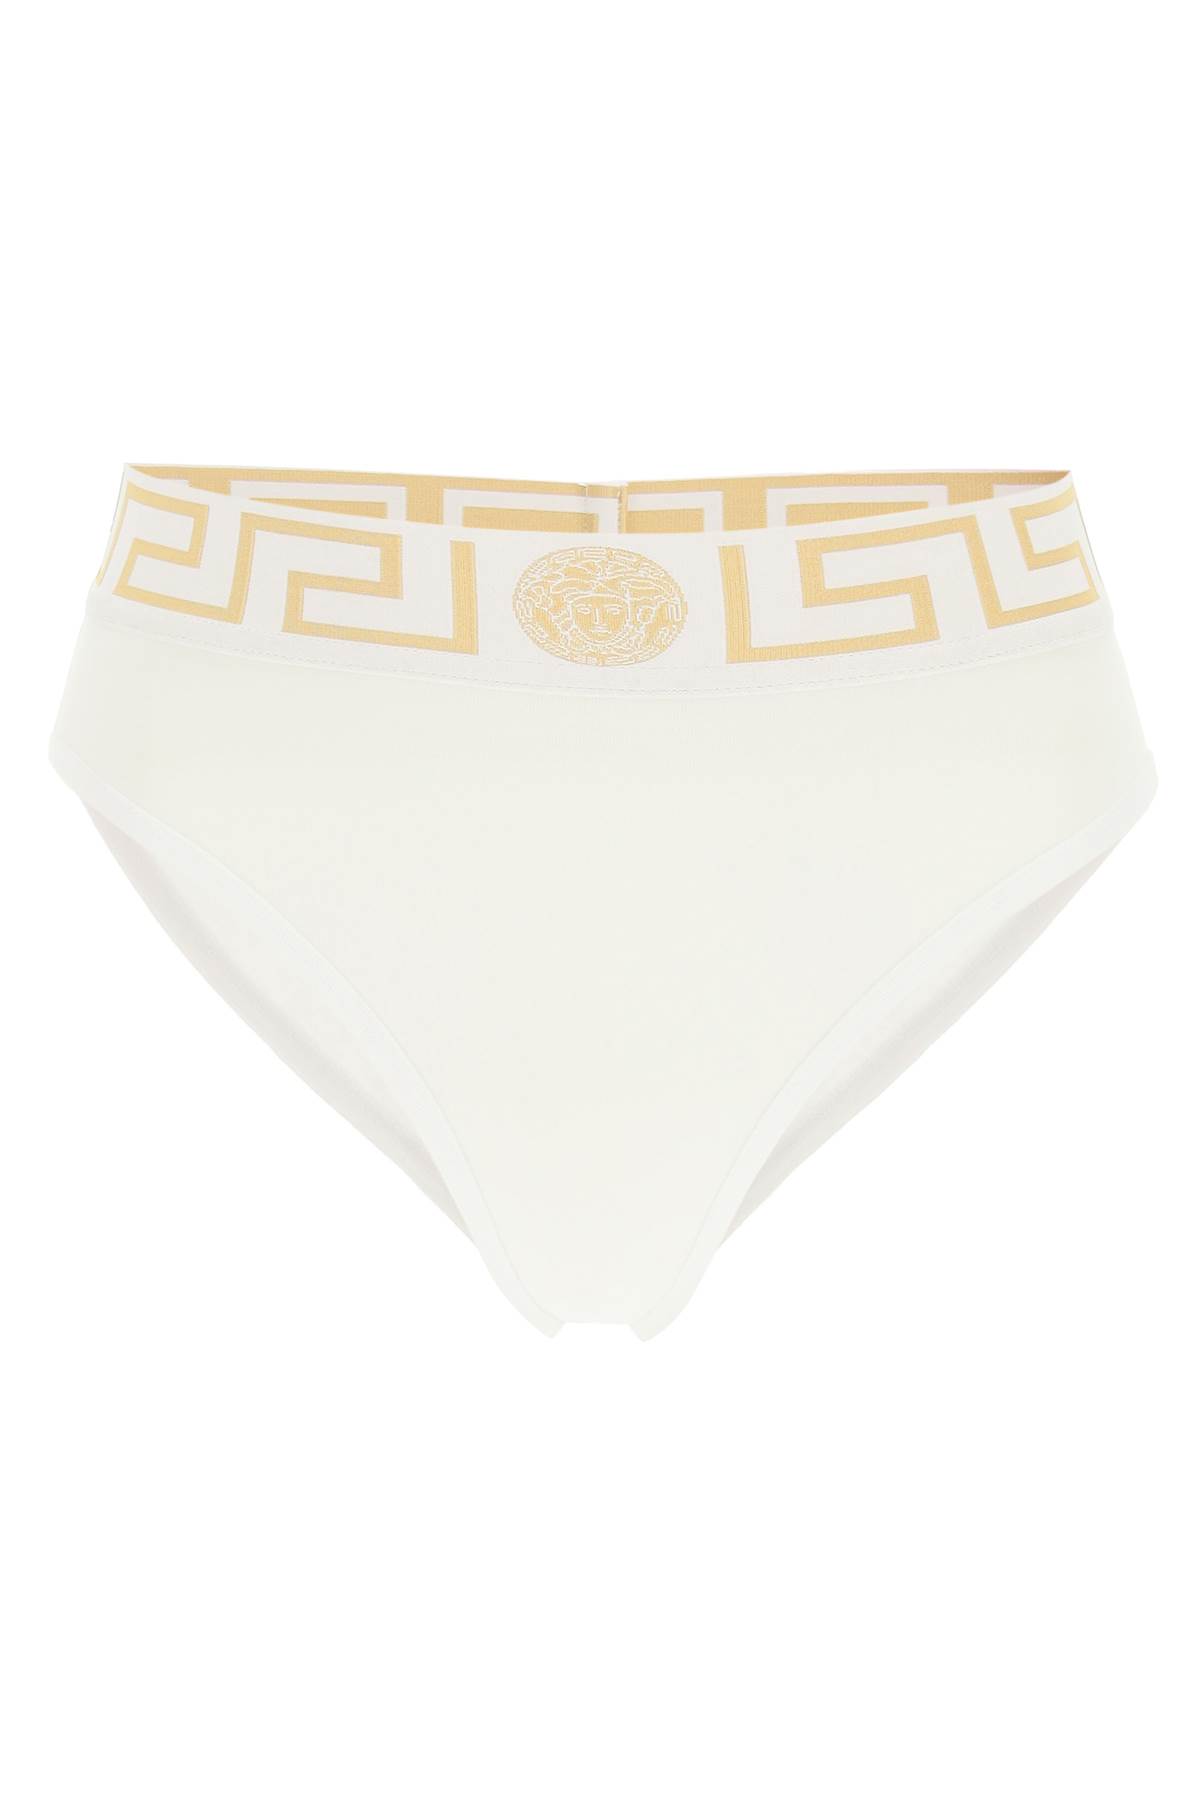 Versace High-waisted Underwear Briefs